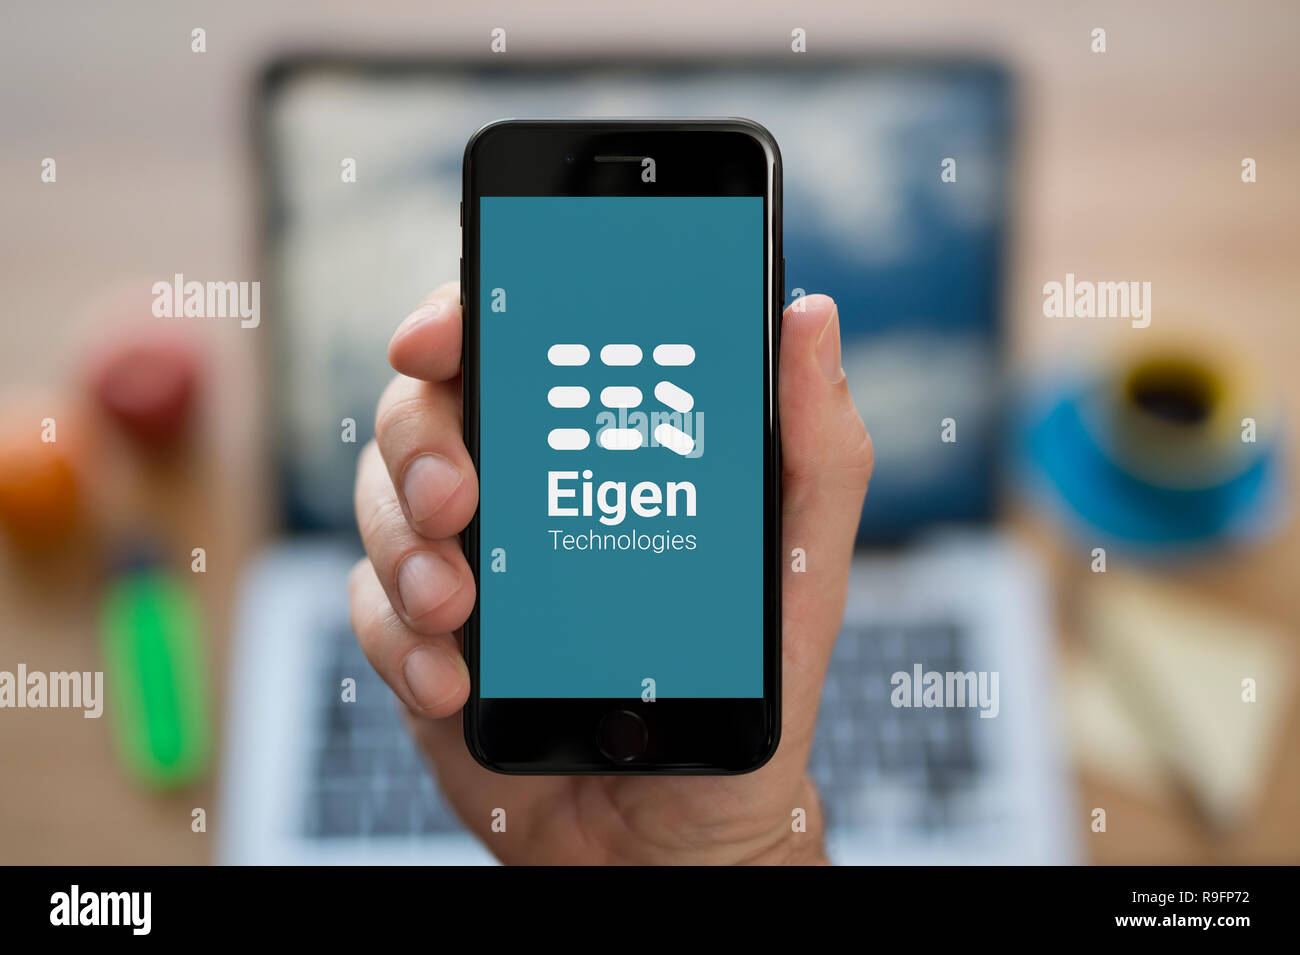 Un uomo guarda al suo iPhone che visualizza le tecnologie Eigen logo (solo uso editoriale). Foto Stock